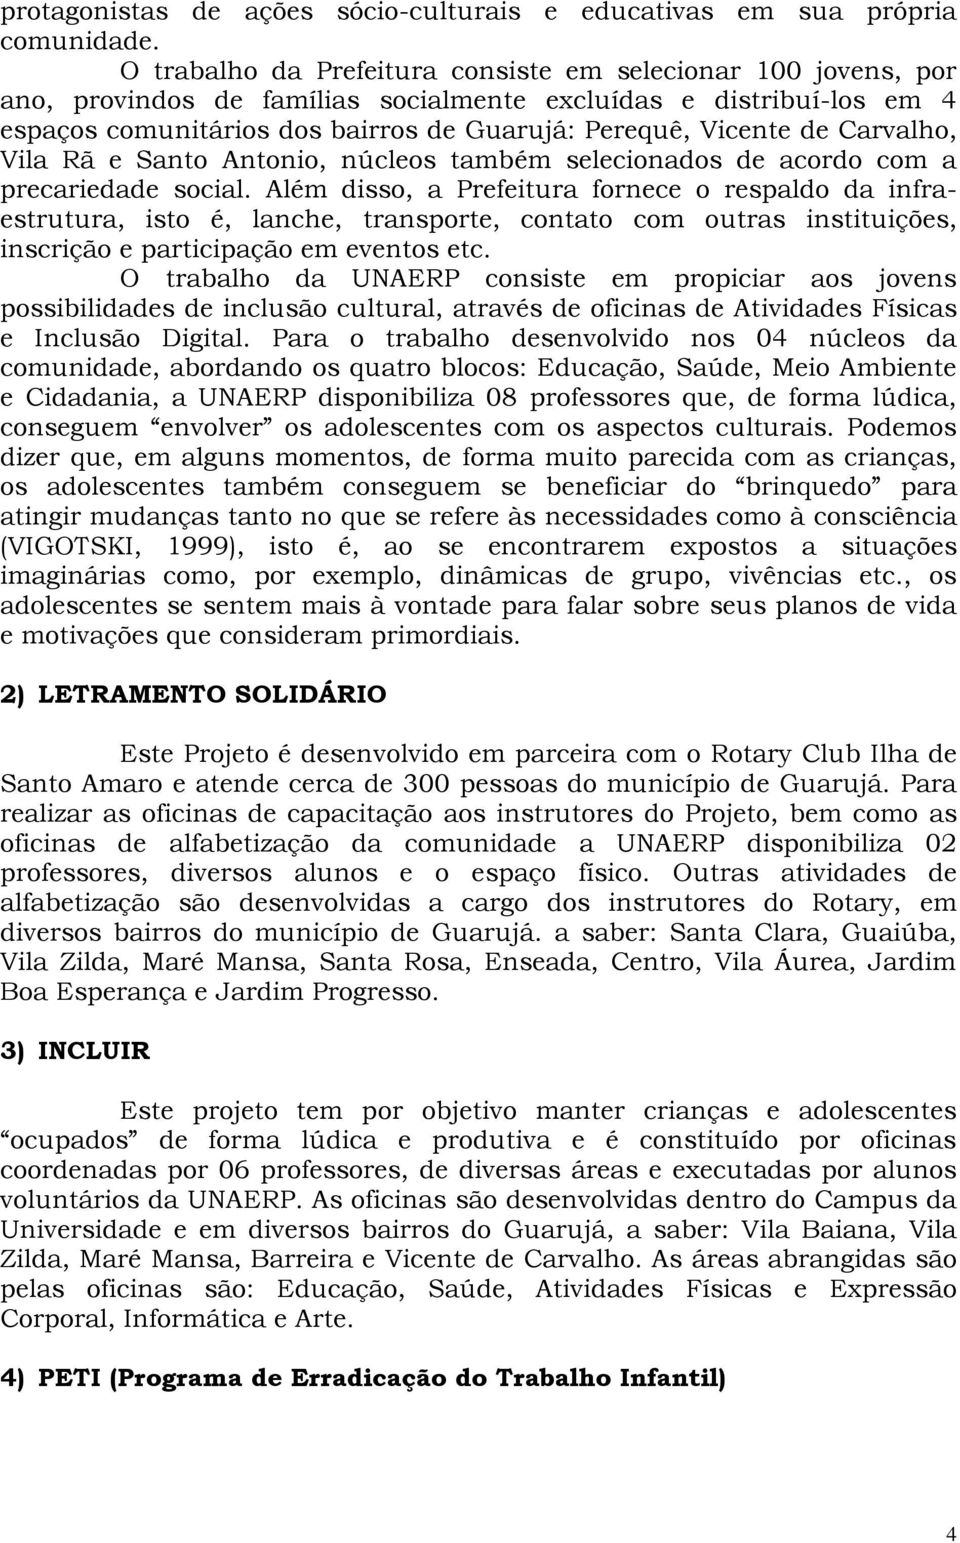 Carvalho, Vila Rã e Santo Antonio, núcleos também selecionados de acordo com a precariedade social.